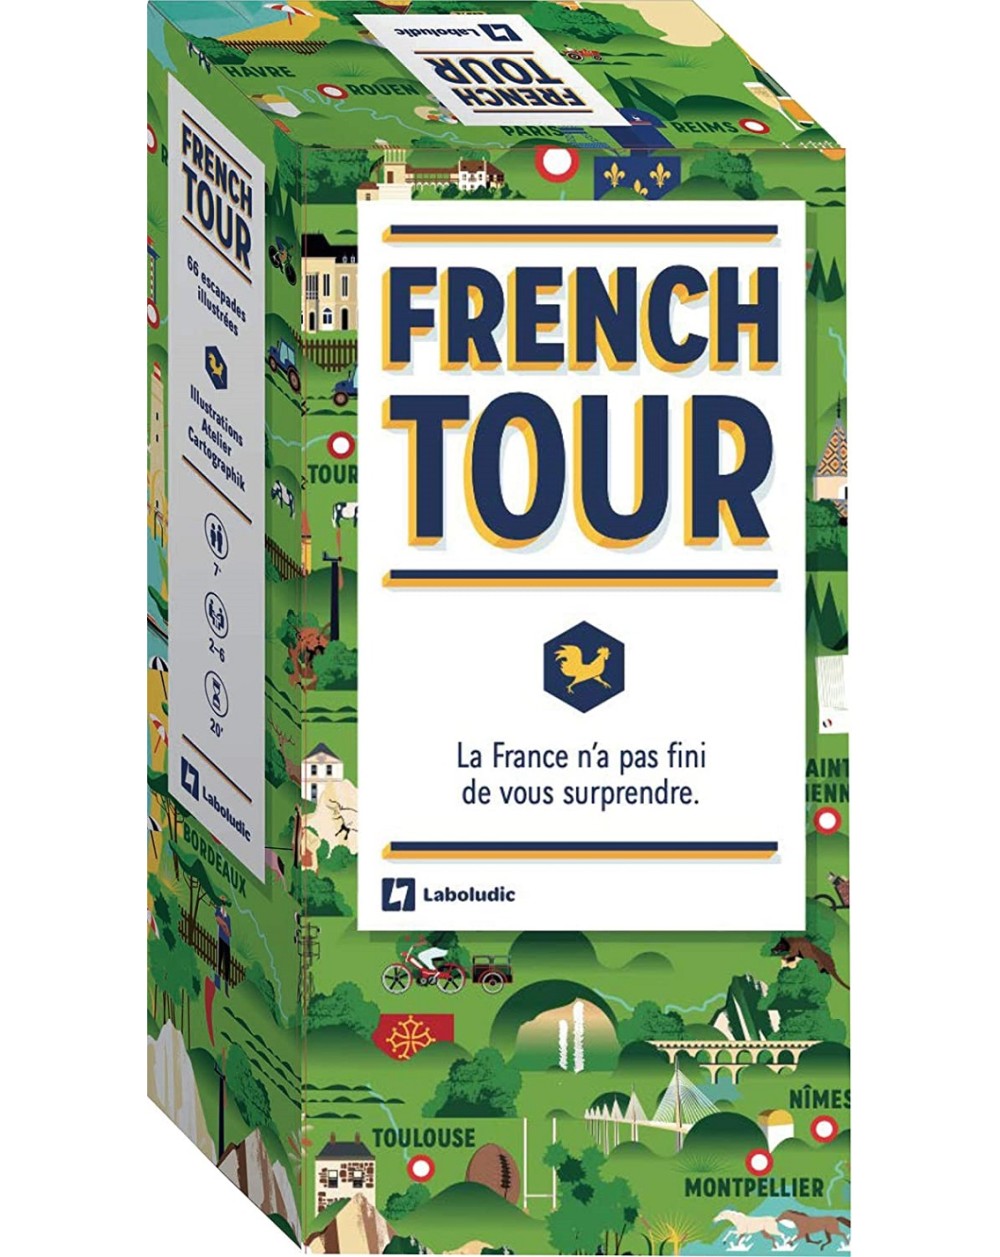 French Tour - La France n'a pas fini de vous surprendre - jeu de carte pour découvrir la France en 66 étapes